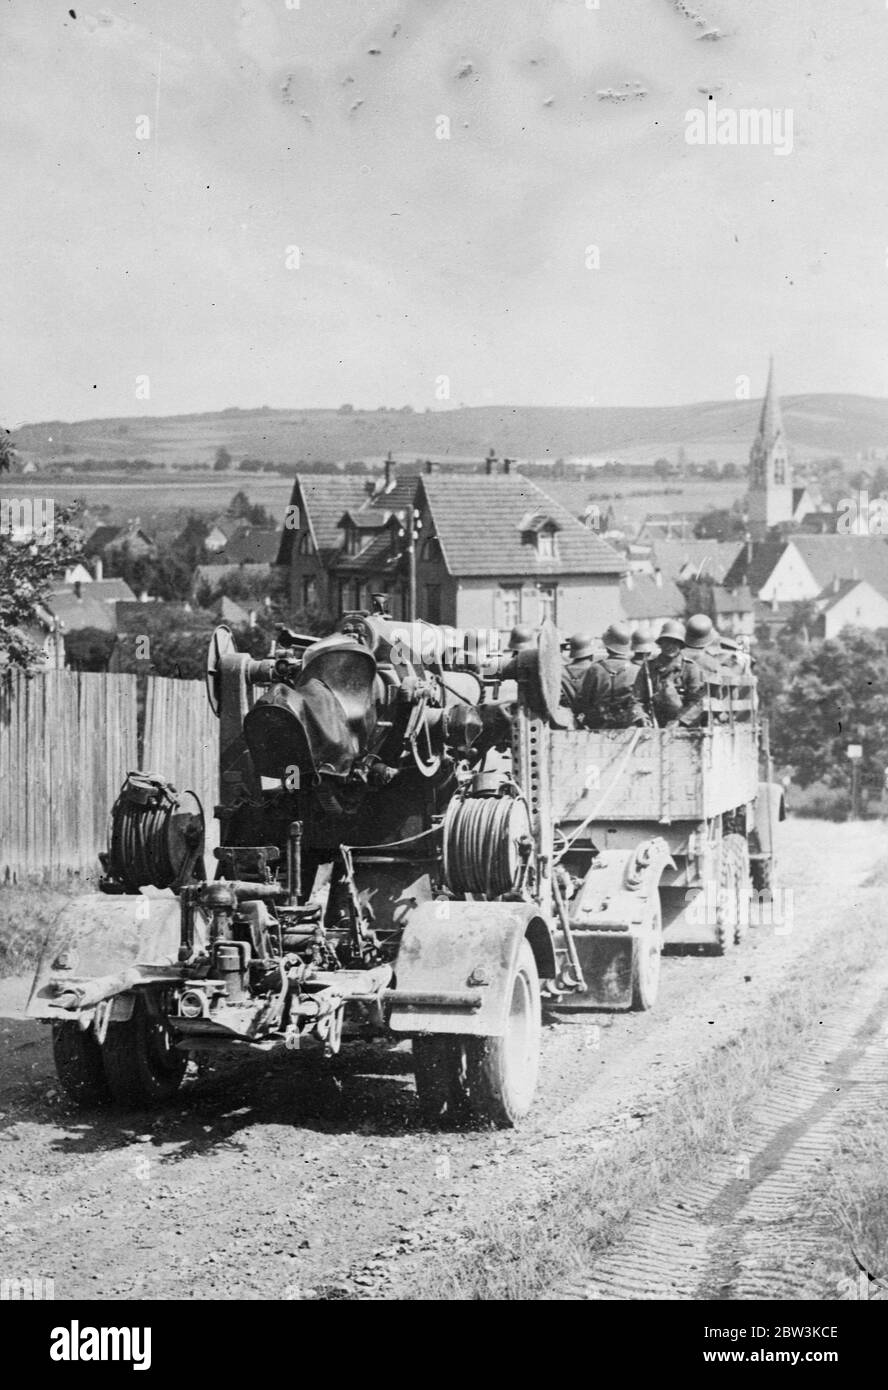 Ingerman Artillerie unterziehen jährliche Ausbildung in Jüterbog mit Live-Munition für die Praxis. Foto zeigt einen deutschen Langzeit-Artilleriekanon, der von seiner Geschützmannschaft geschleppt wird. Bis 10. August 1935 Stockfoto